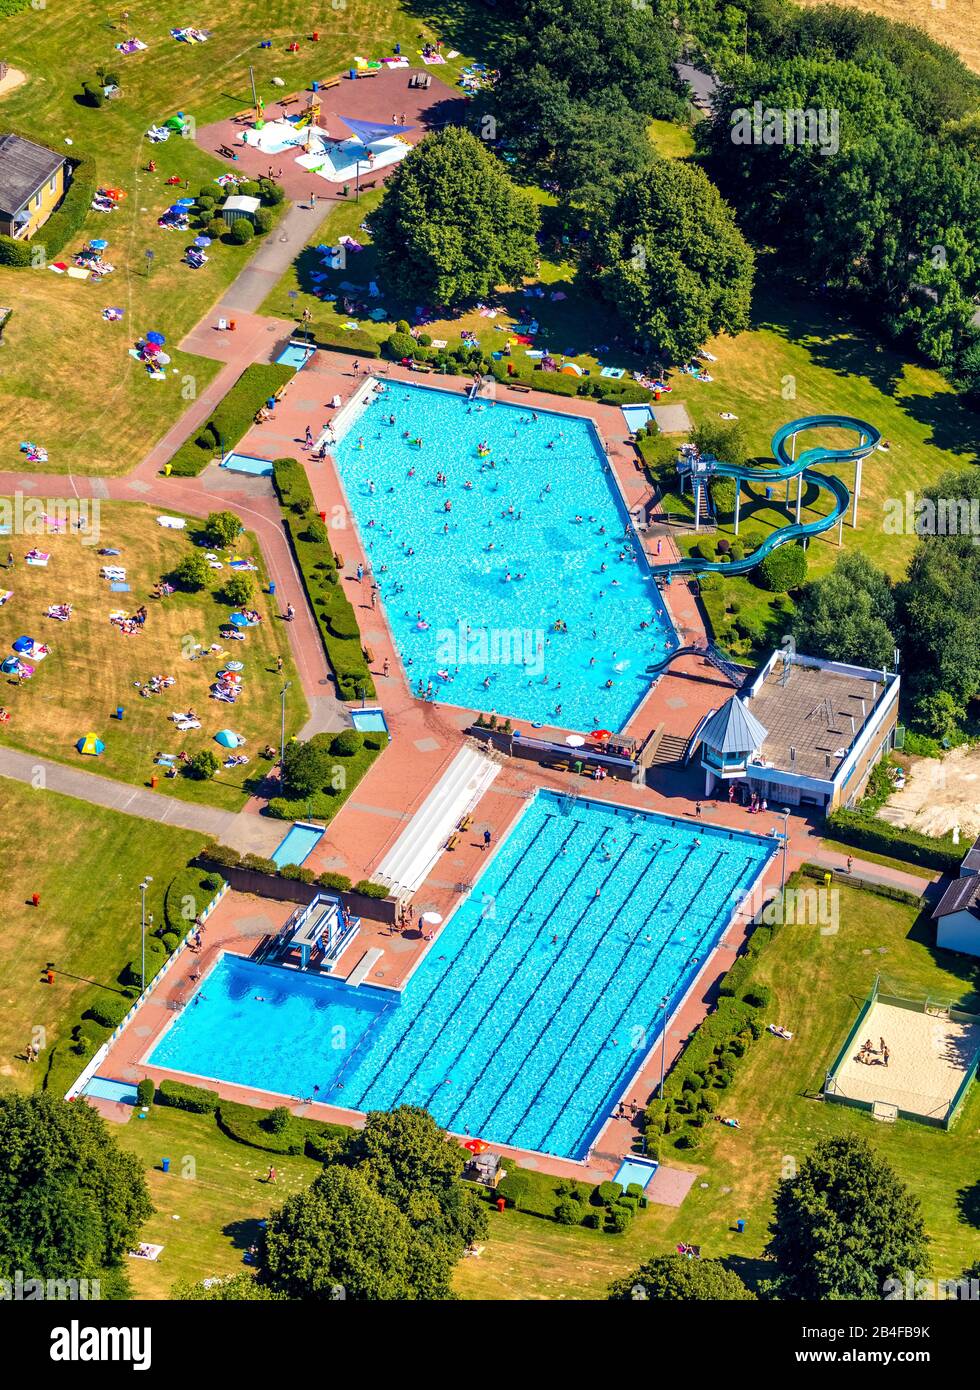 Vue aérienne de la piscine extérieure et de la piscine publique HeljensBad avec piscine nageuse, piscine pour longueurs et bains de soleil à Heiligenhaus dans la région de la Ruhr dans l'état fédéral de Rhénanie-du-Nord-Westphalie en Allemagne. Banque D'Images